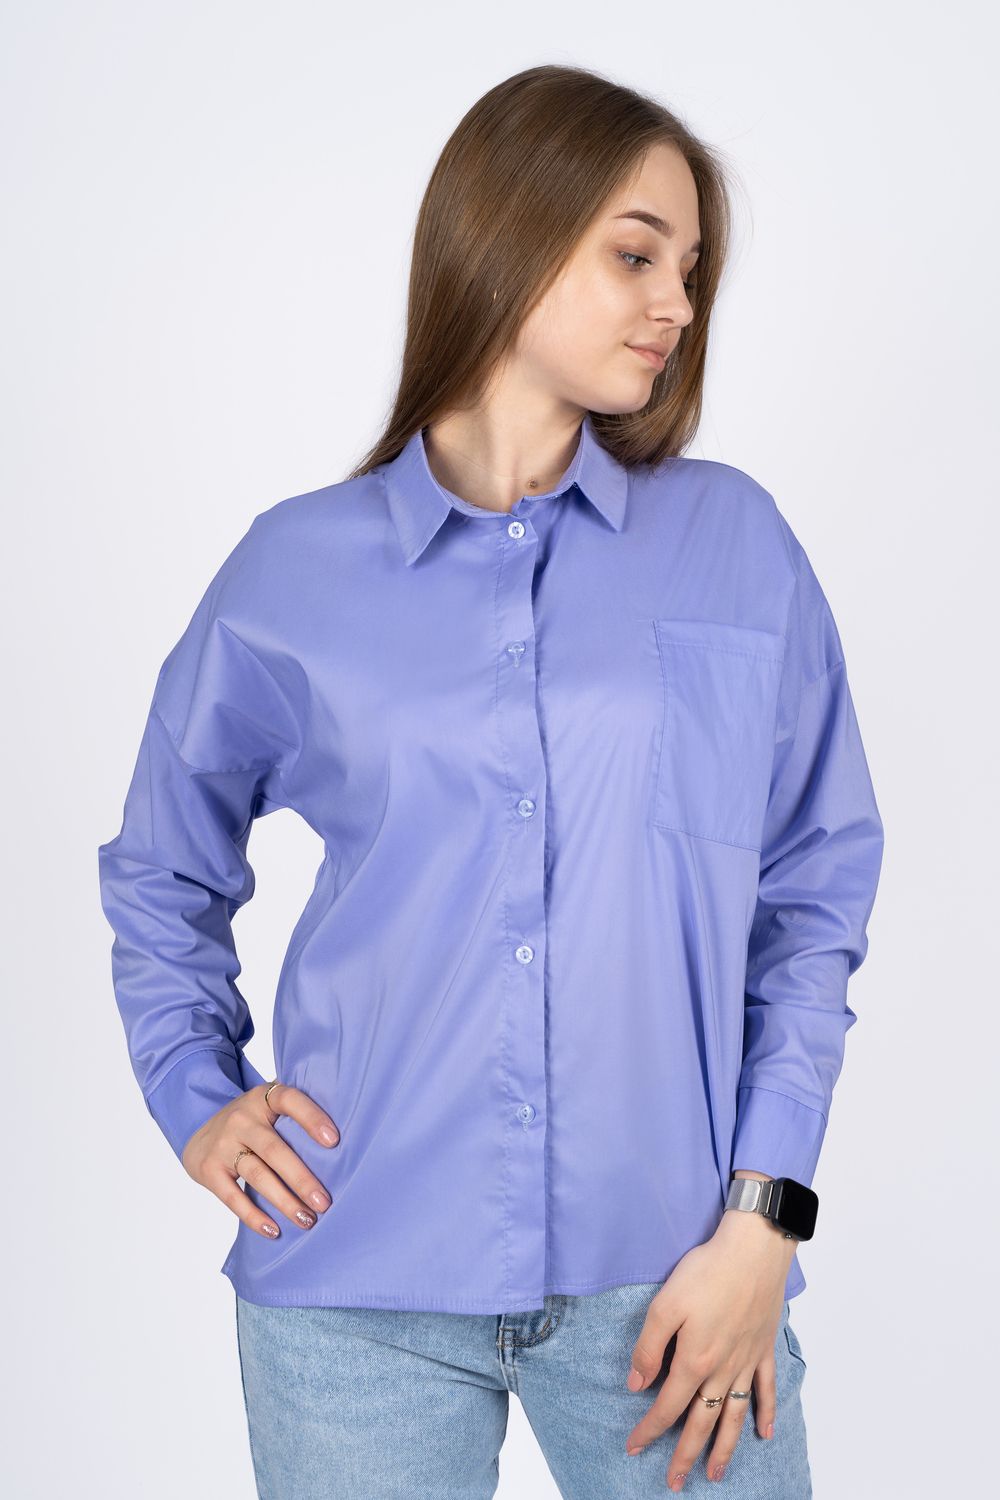 Джемпер (рубашка) женский 6359 - сиреневый